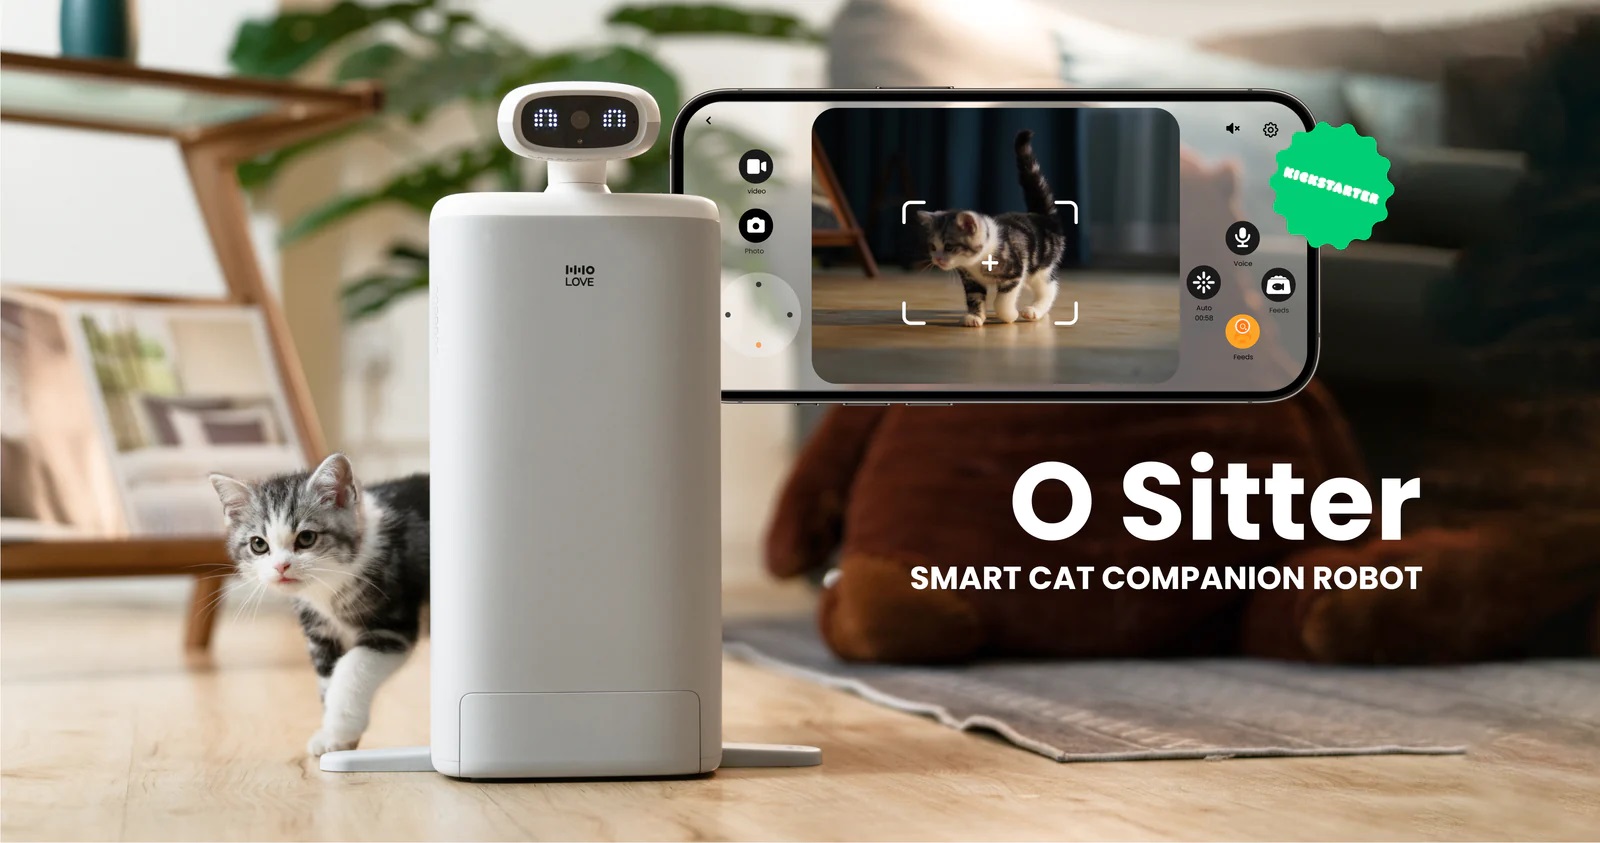 HHOLOVE O Sitter: slimme robotkattenoppas met camera en automatische voederbak die huisdieren vermaakt en voedt